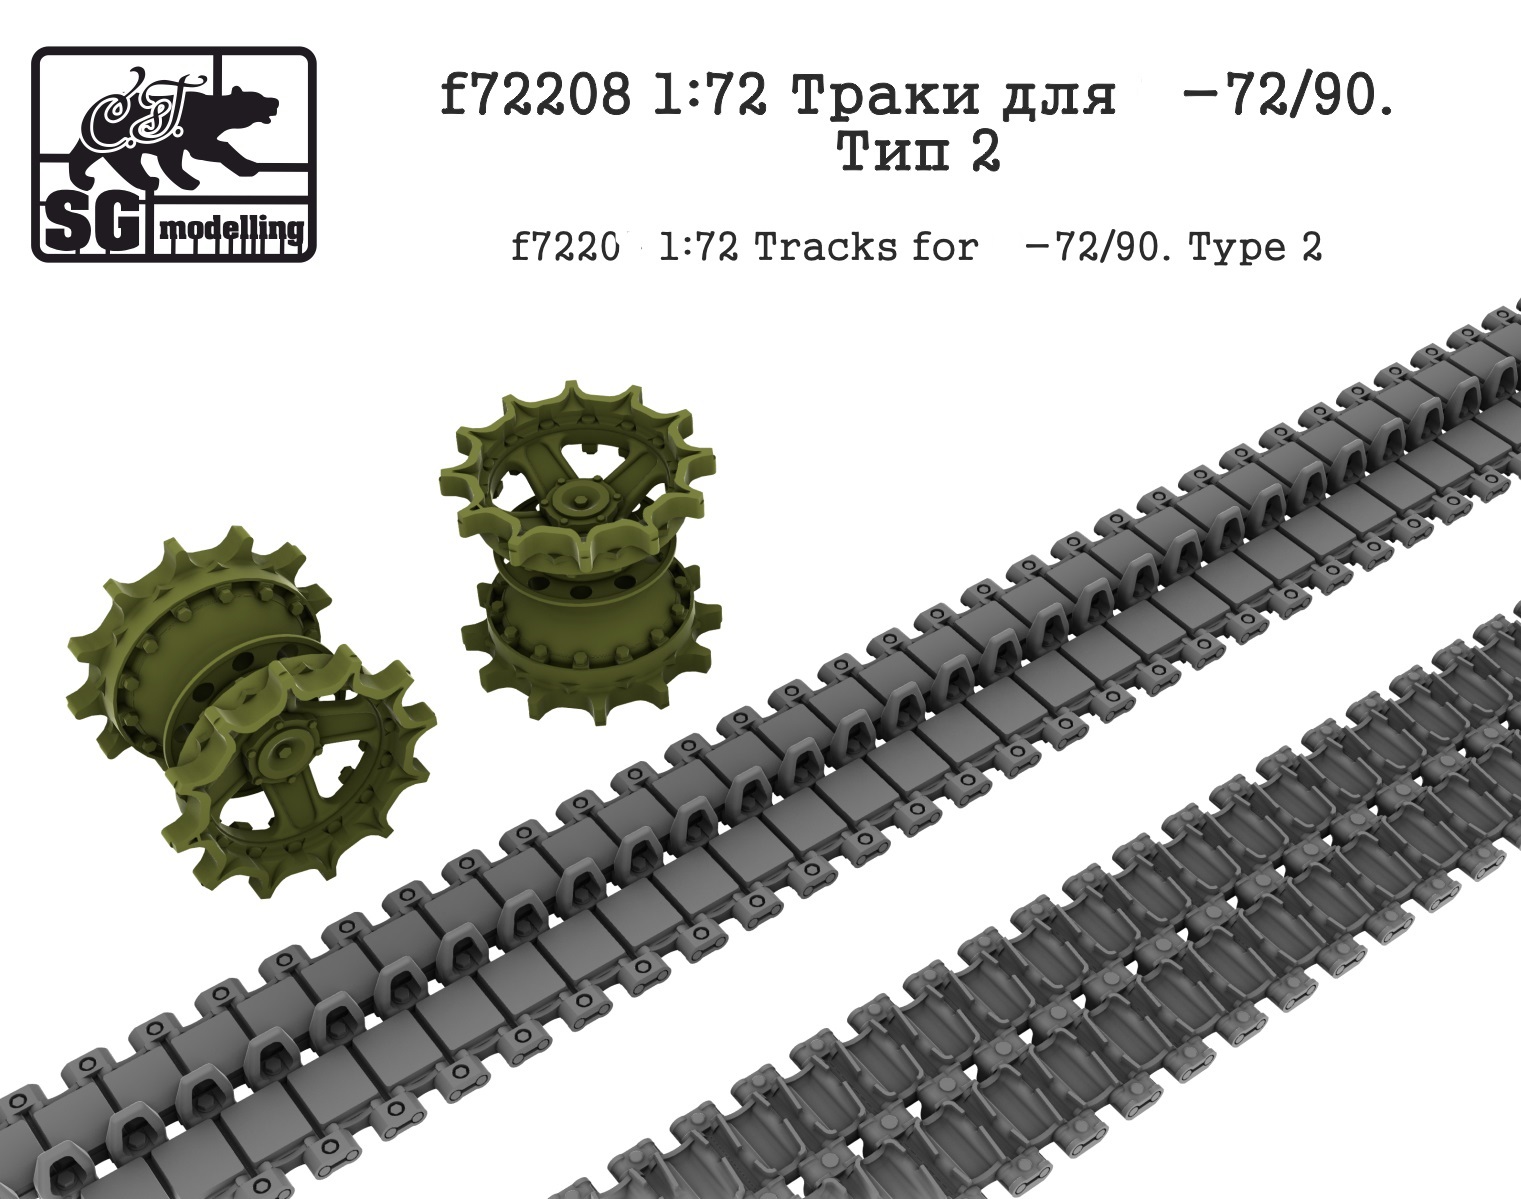 f72208  дополнения из смолы  Траки для Танк-72/90. Тип 2  (1:72)